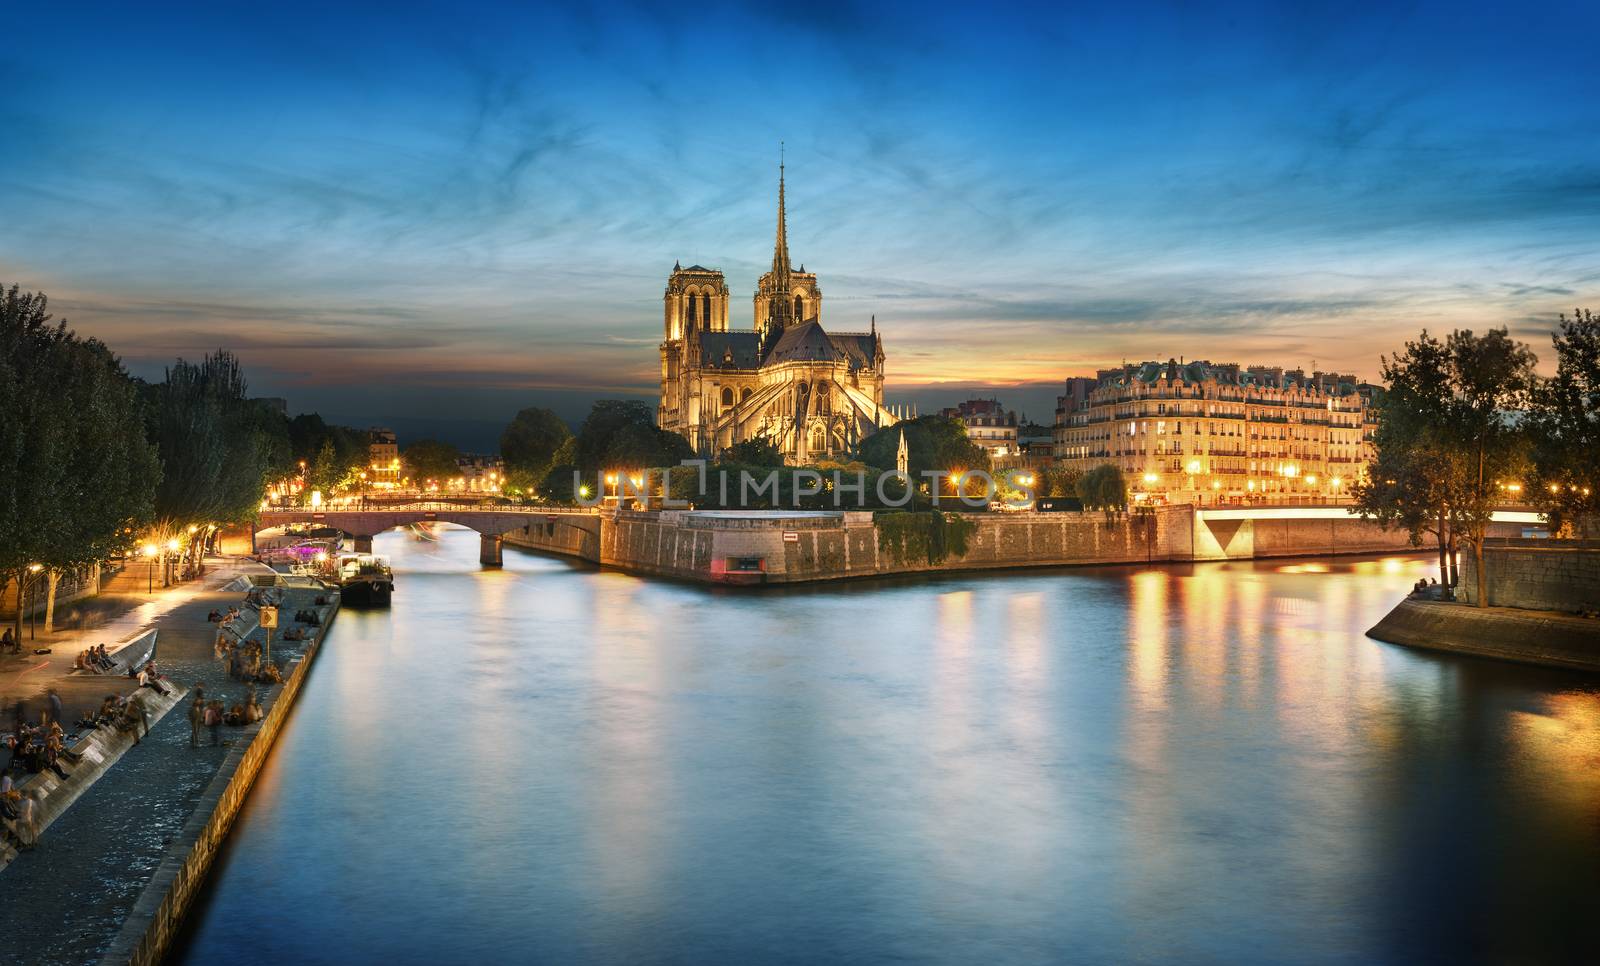 Notre Dame de Paris, France by ventdusud